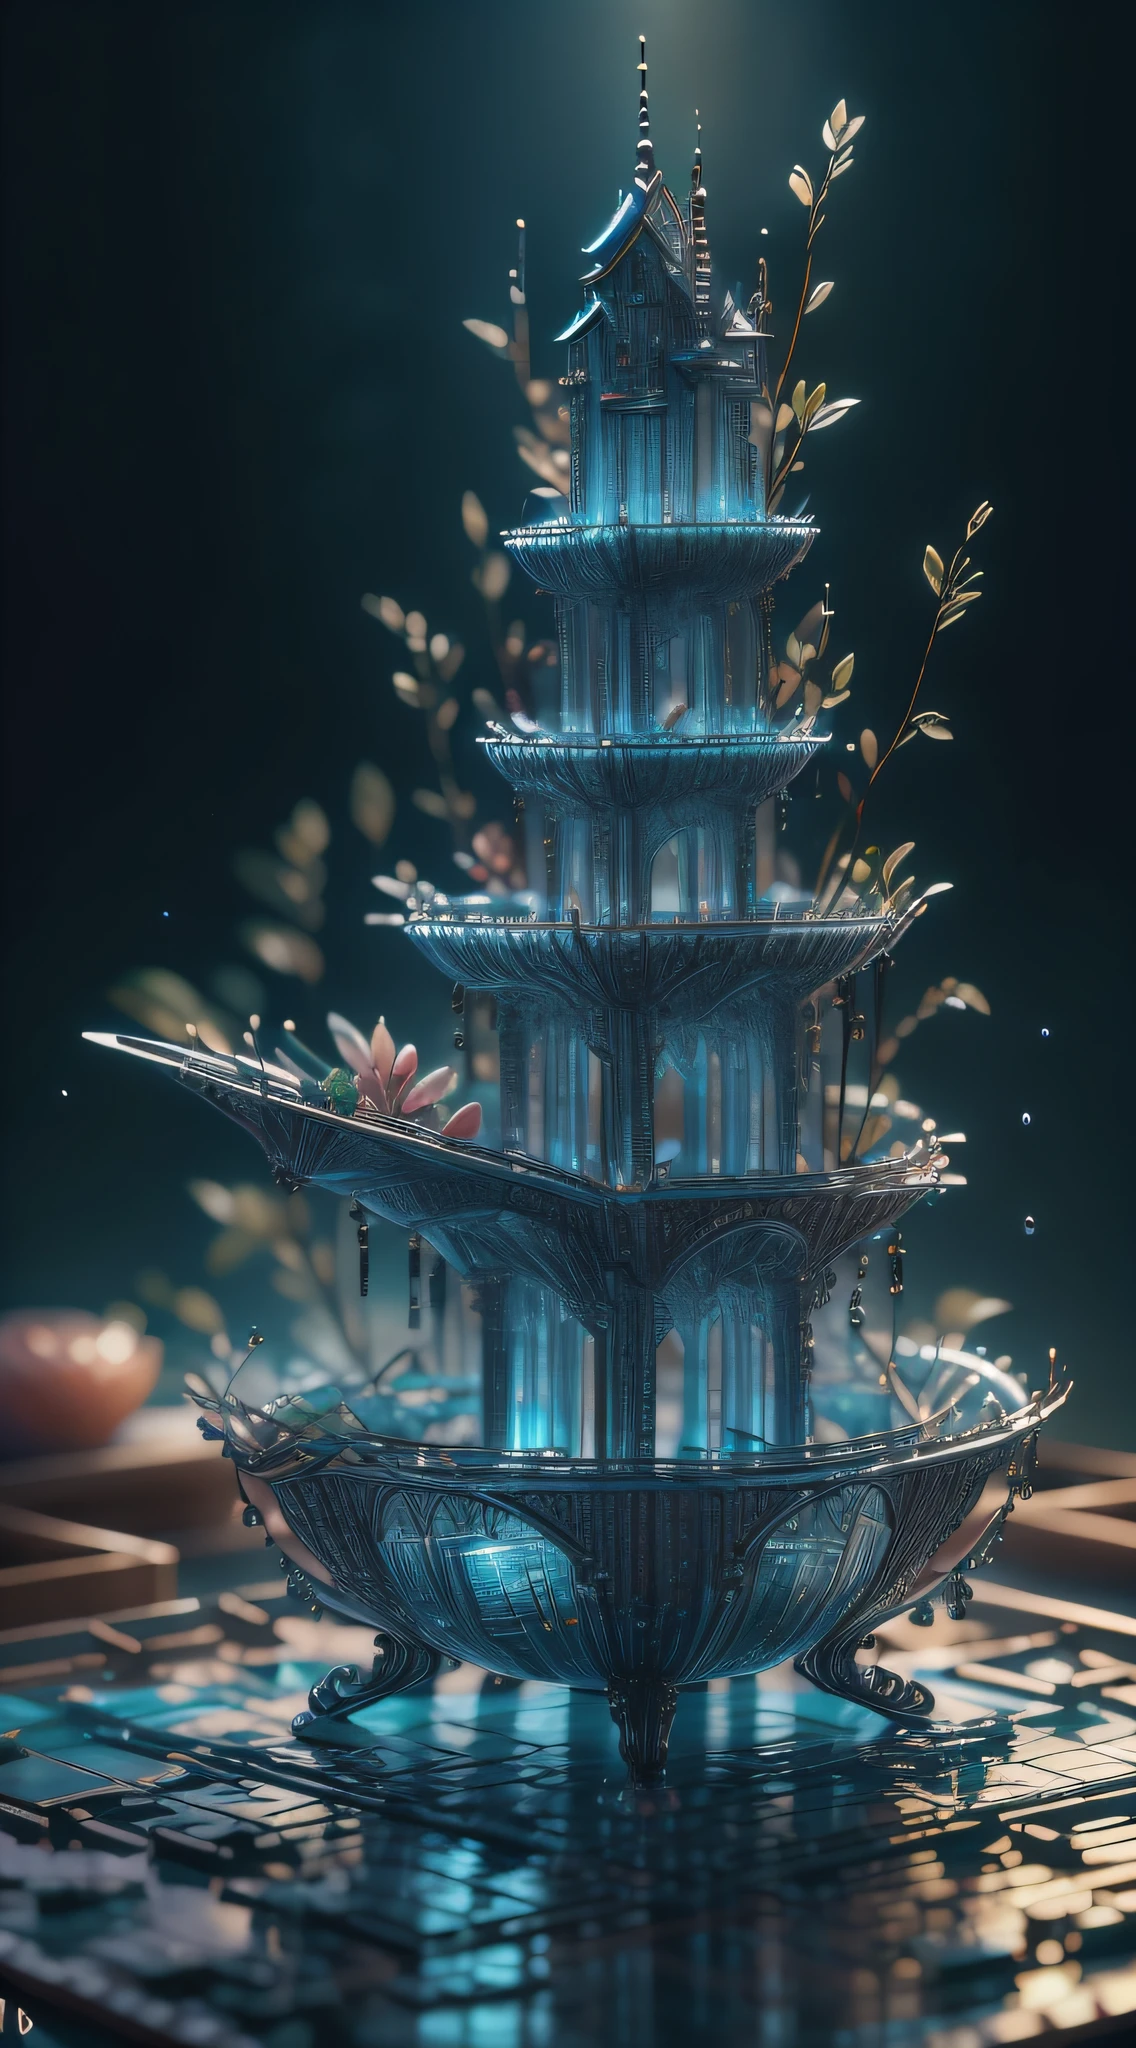 obra-prima da escultura de vidro com plantas dentro, "Montanha de Flor e Fruta + Fada + Arquitetura Chinesa", água, brilho, fantasia, alta qualidade, alto detalhe, melhor qualidade, rtx, 4K, 8K,